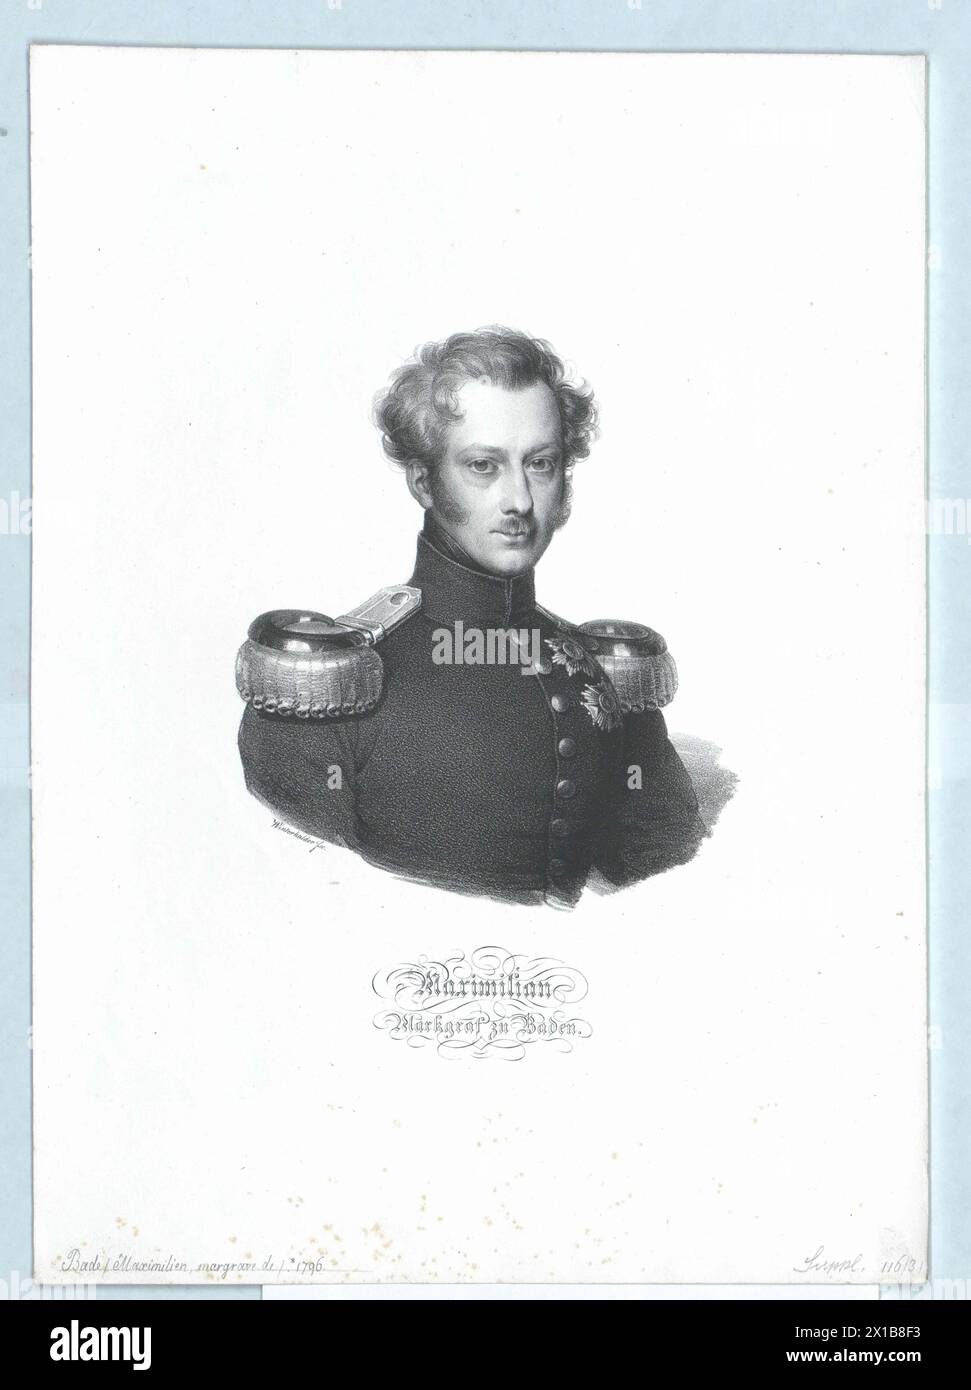 Maximilian, Markgraf von Baden, - 19830422 PD140486 - Rechteinfo: Rechte verwaltet (RM) Stockfoto